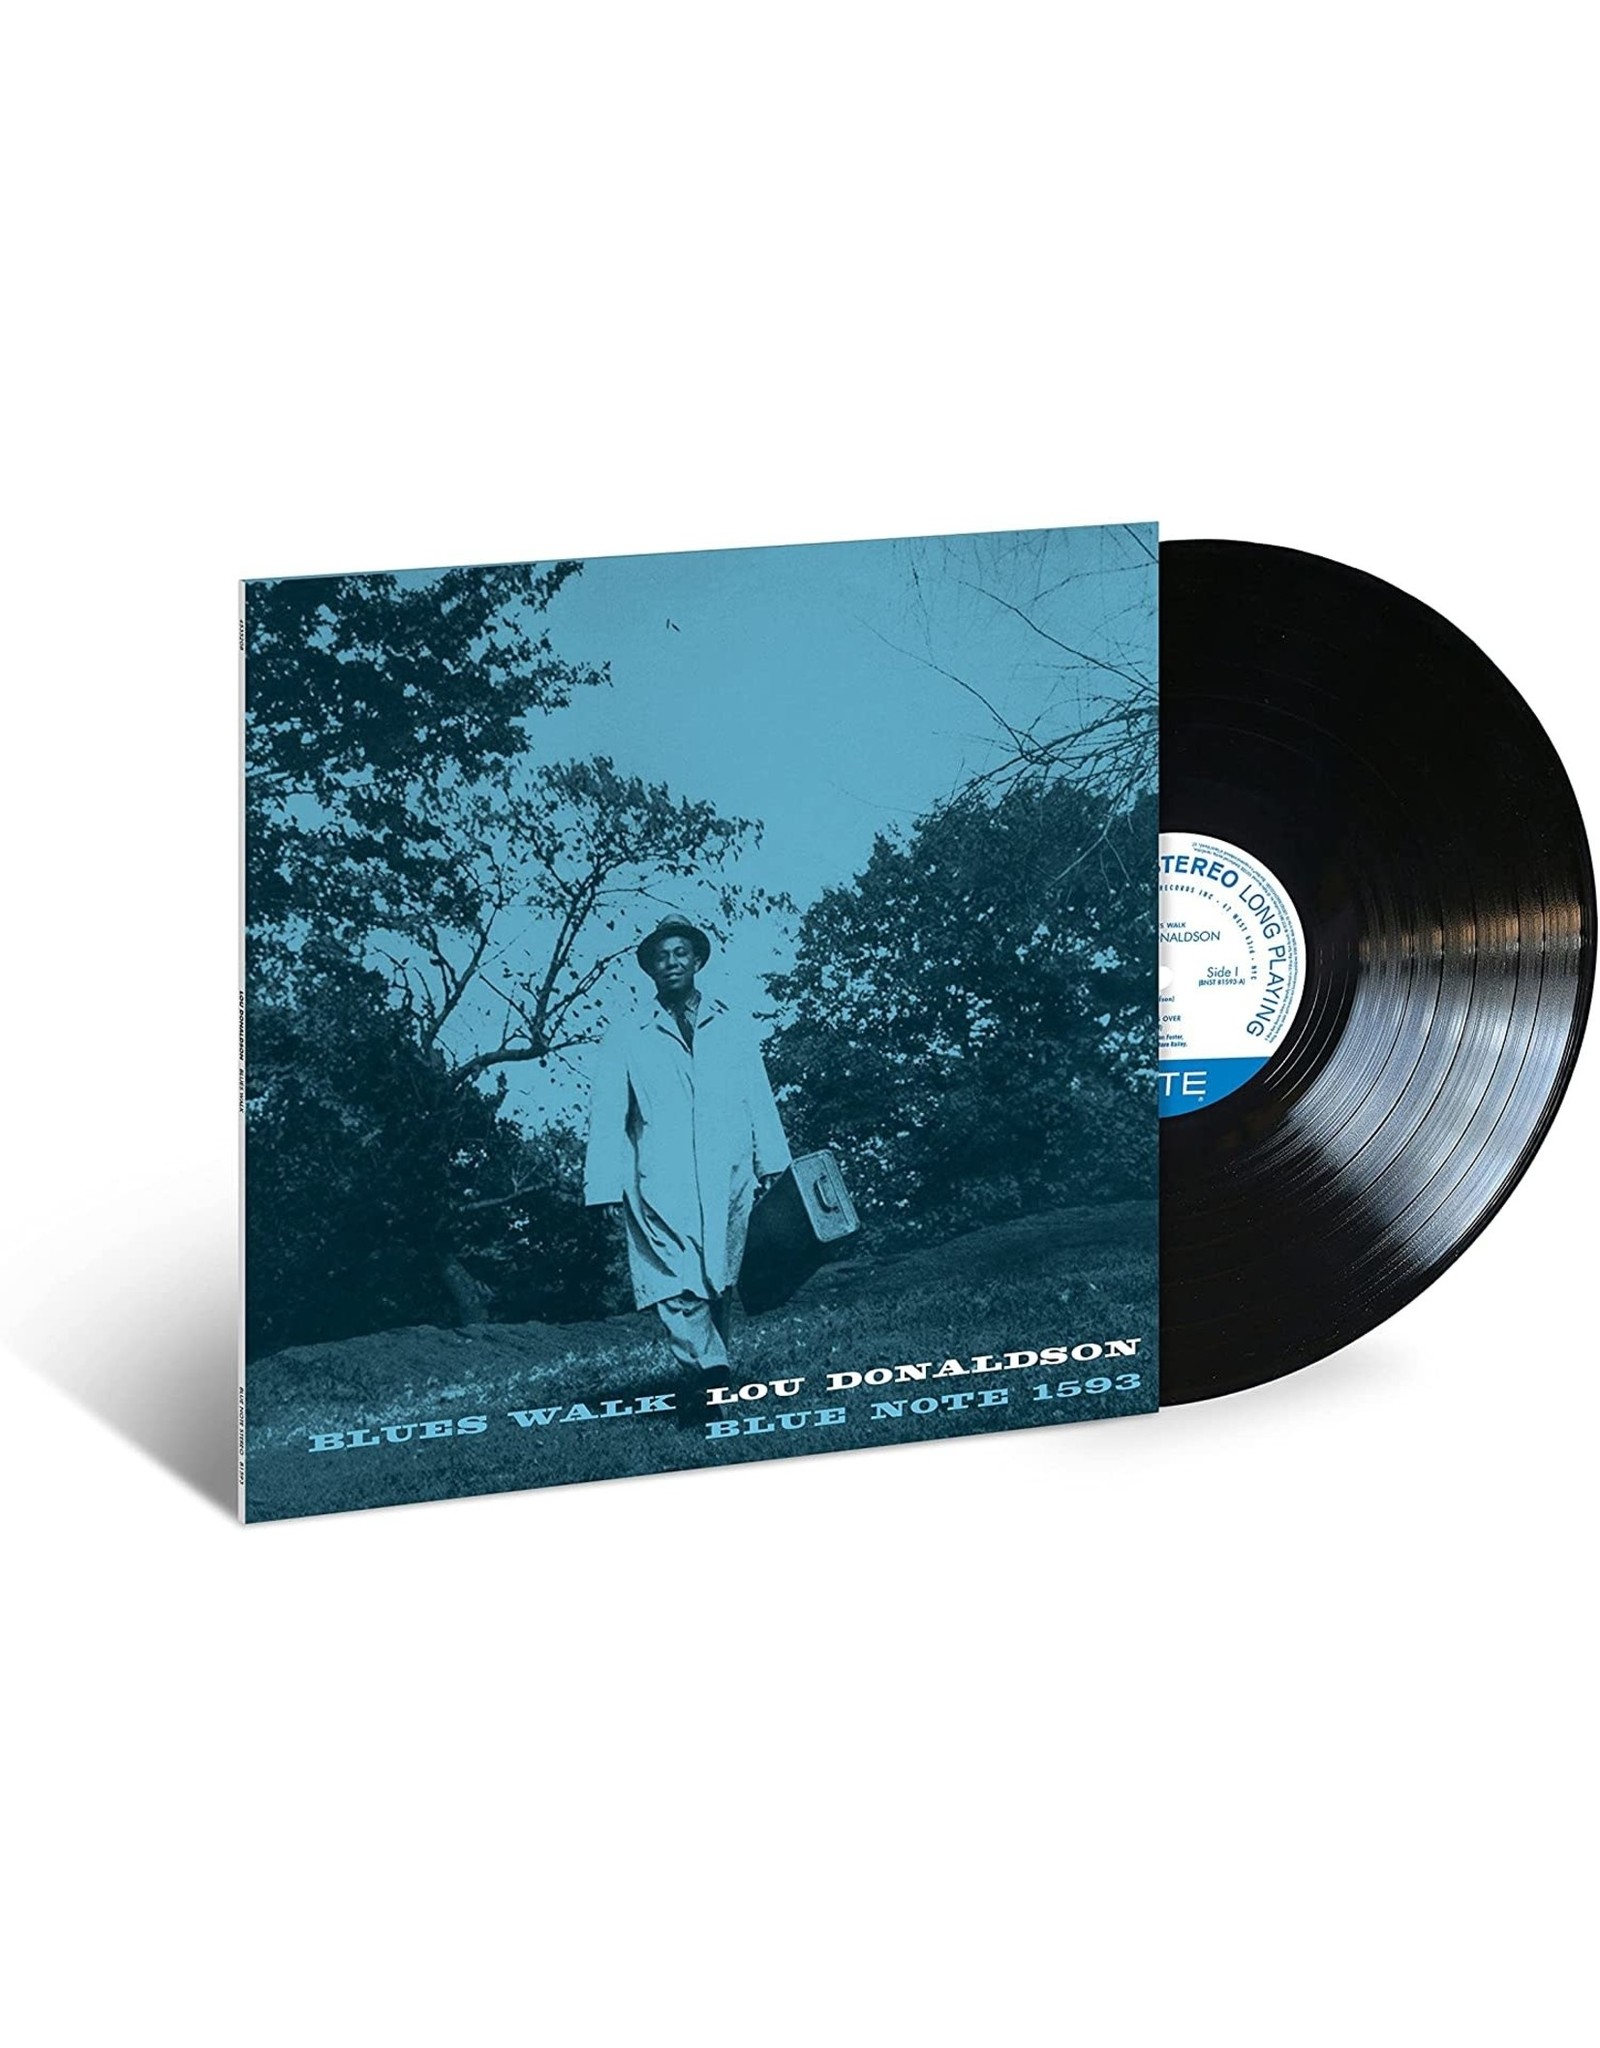 Lou Donaldson - Blues Walk (Blue Note Classic)